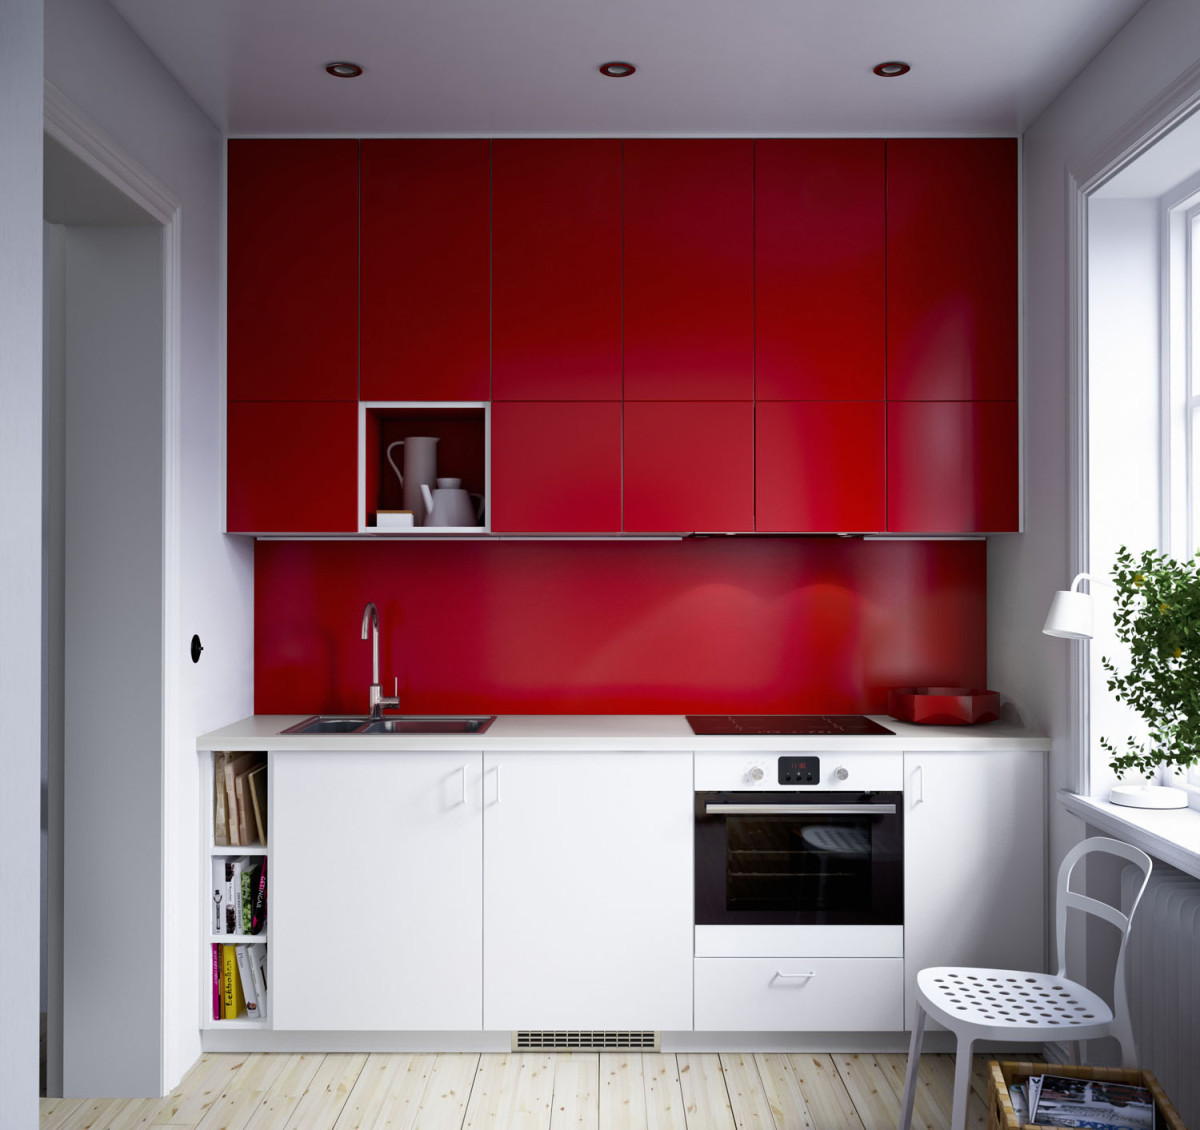 Nástěnný panel Fastbo z vysokotlakového melaminového laminátu je vhodný na stěnu za pracovní i varnou desku, kromě plynové. Odolává teplu, vodě, mastnotě a špíně. V nabídce je v černé, červené a bílé barvě, hladký nebo se vzorem obkladaček, rozměry 60 × 50 cm. (foto: IKEA)